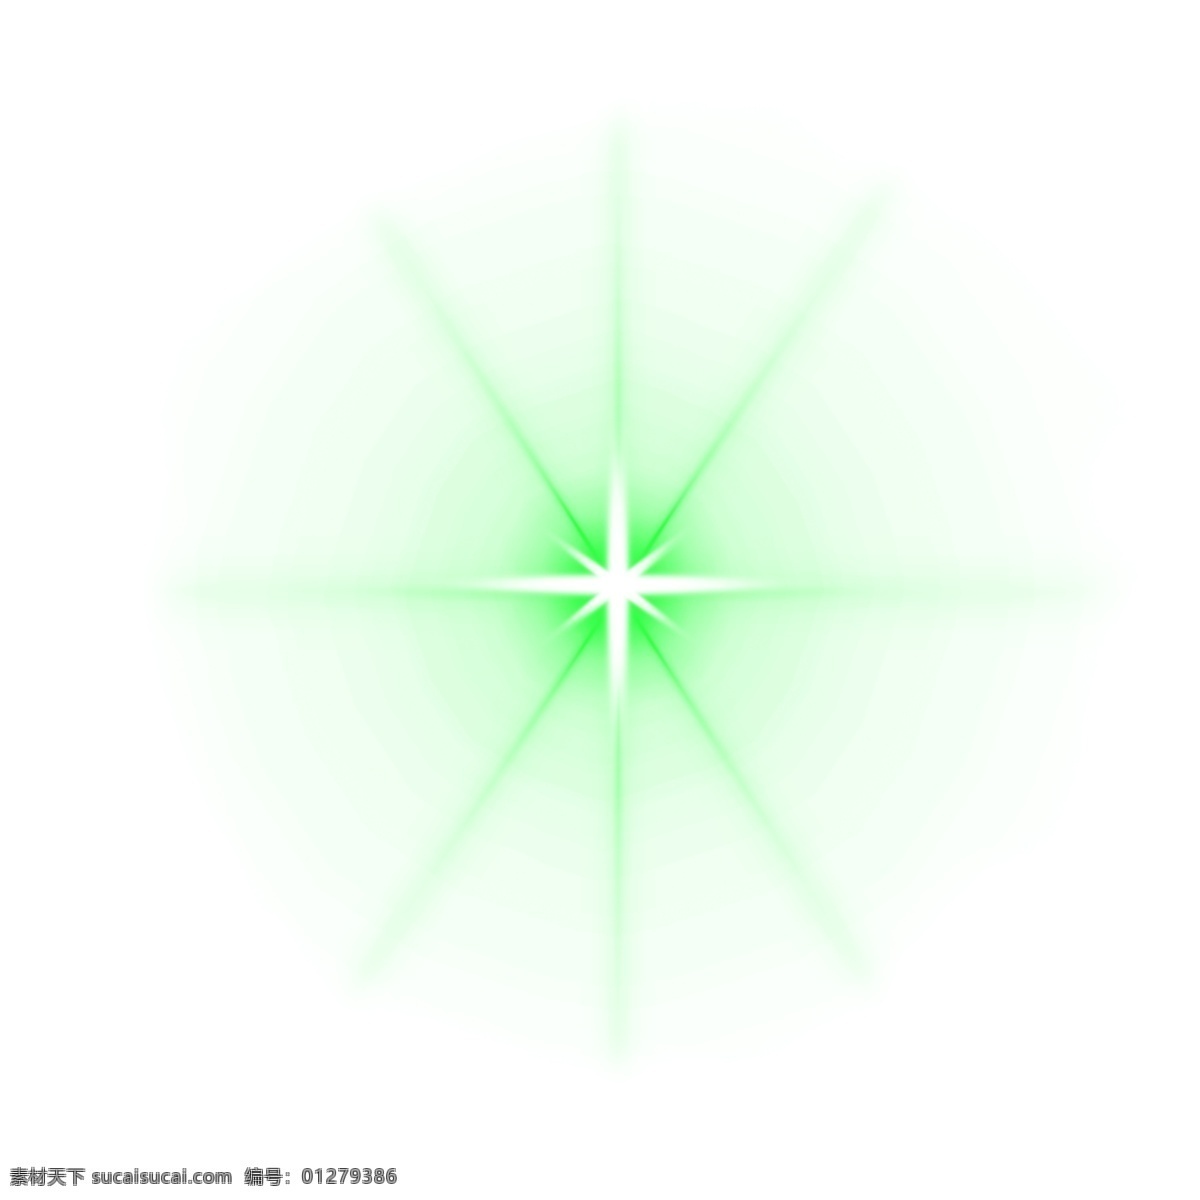 绿色 光效 透明 底 发散光 镜头光 光束 光柱 射灯 灯光 炫光 炫彩 酷炫 光 未来感 科技